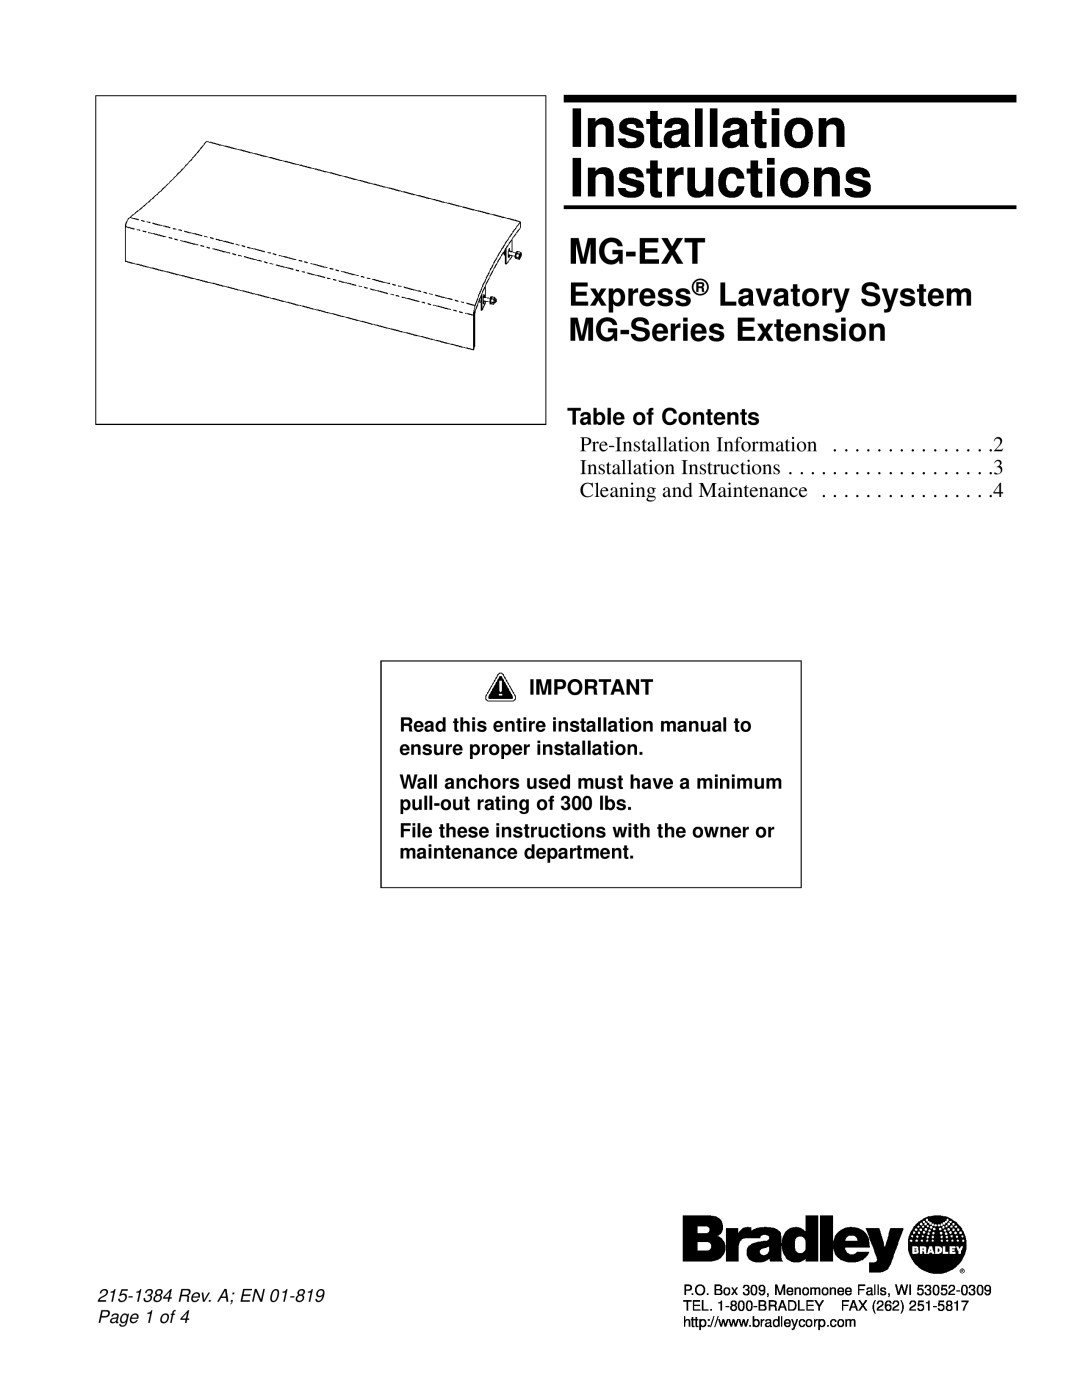 Bradley Smoker MG-EXT installation instructions Table of Contents, Installation Instructions, Mg-Ext 